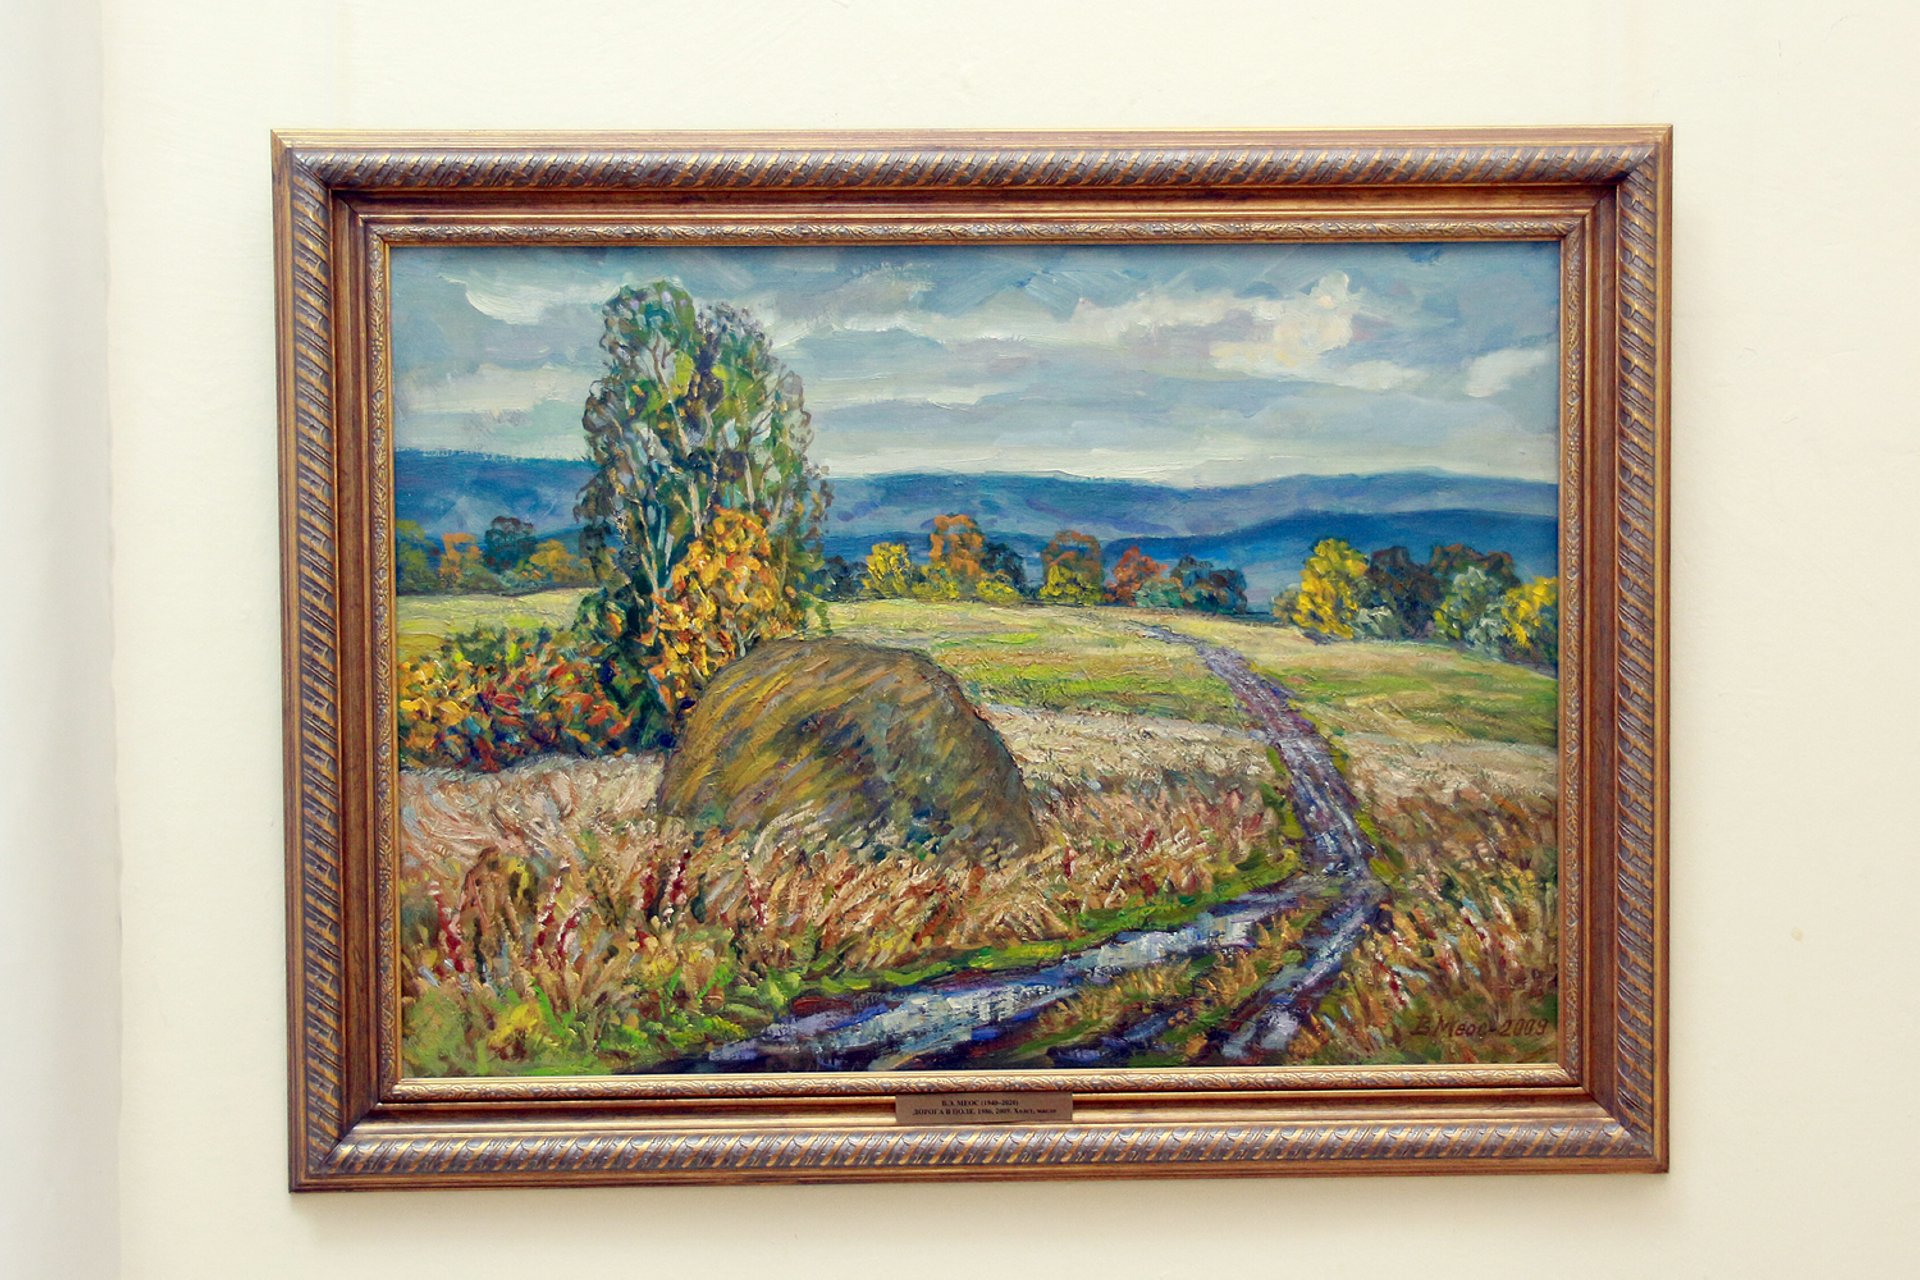 Открытие персональной выставки живописи художника Владислава Меоса в галерее «Ижад»